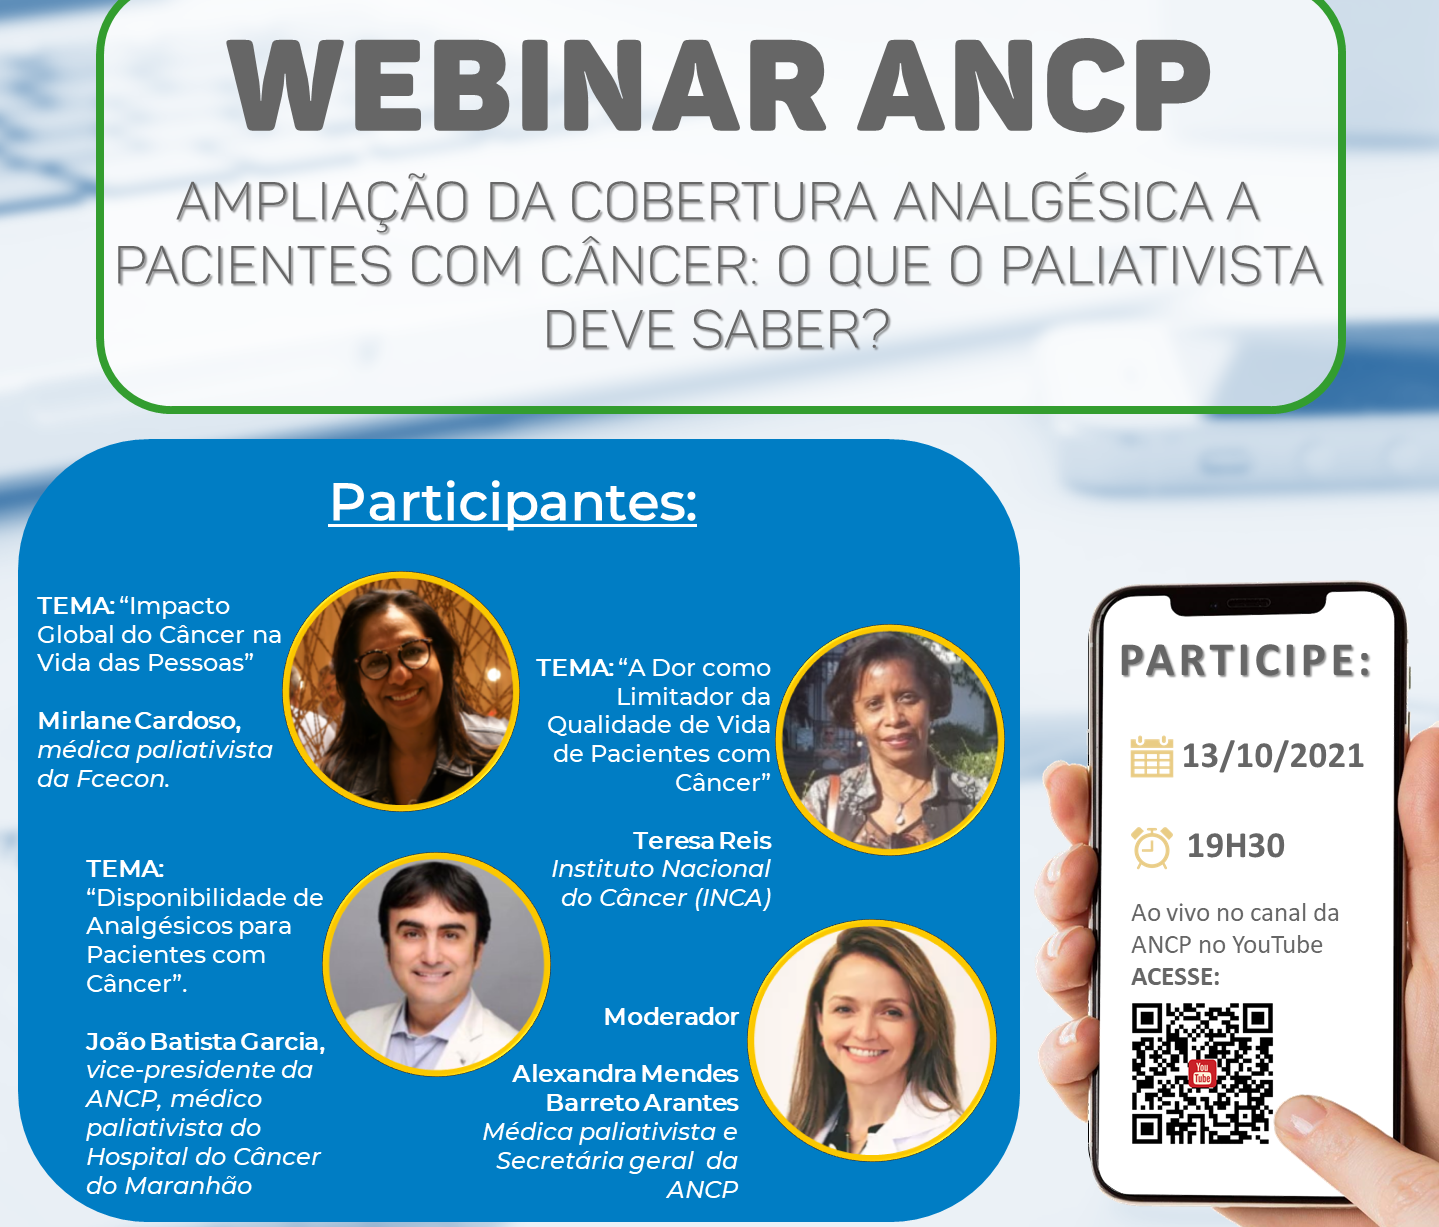 Webinar ANCP – “Ampliação da Cobertura Analgésica a pacientes com Câncer: O que o paliativista deve saber?”